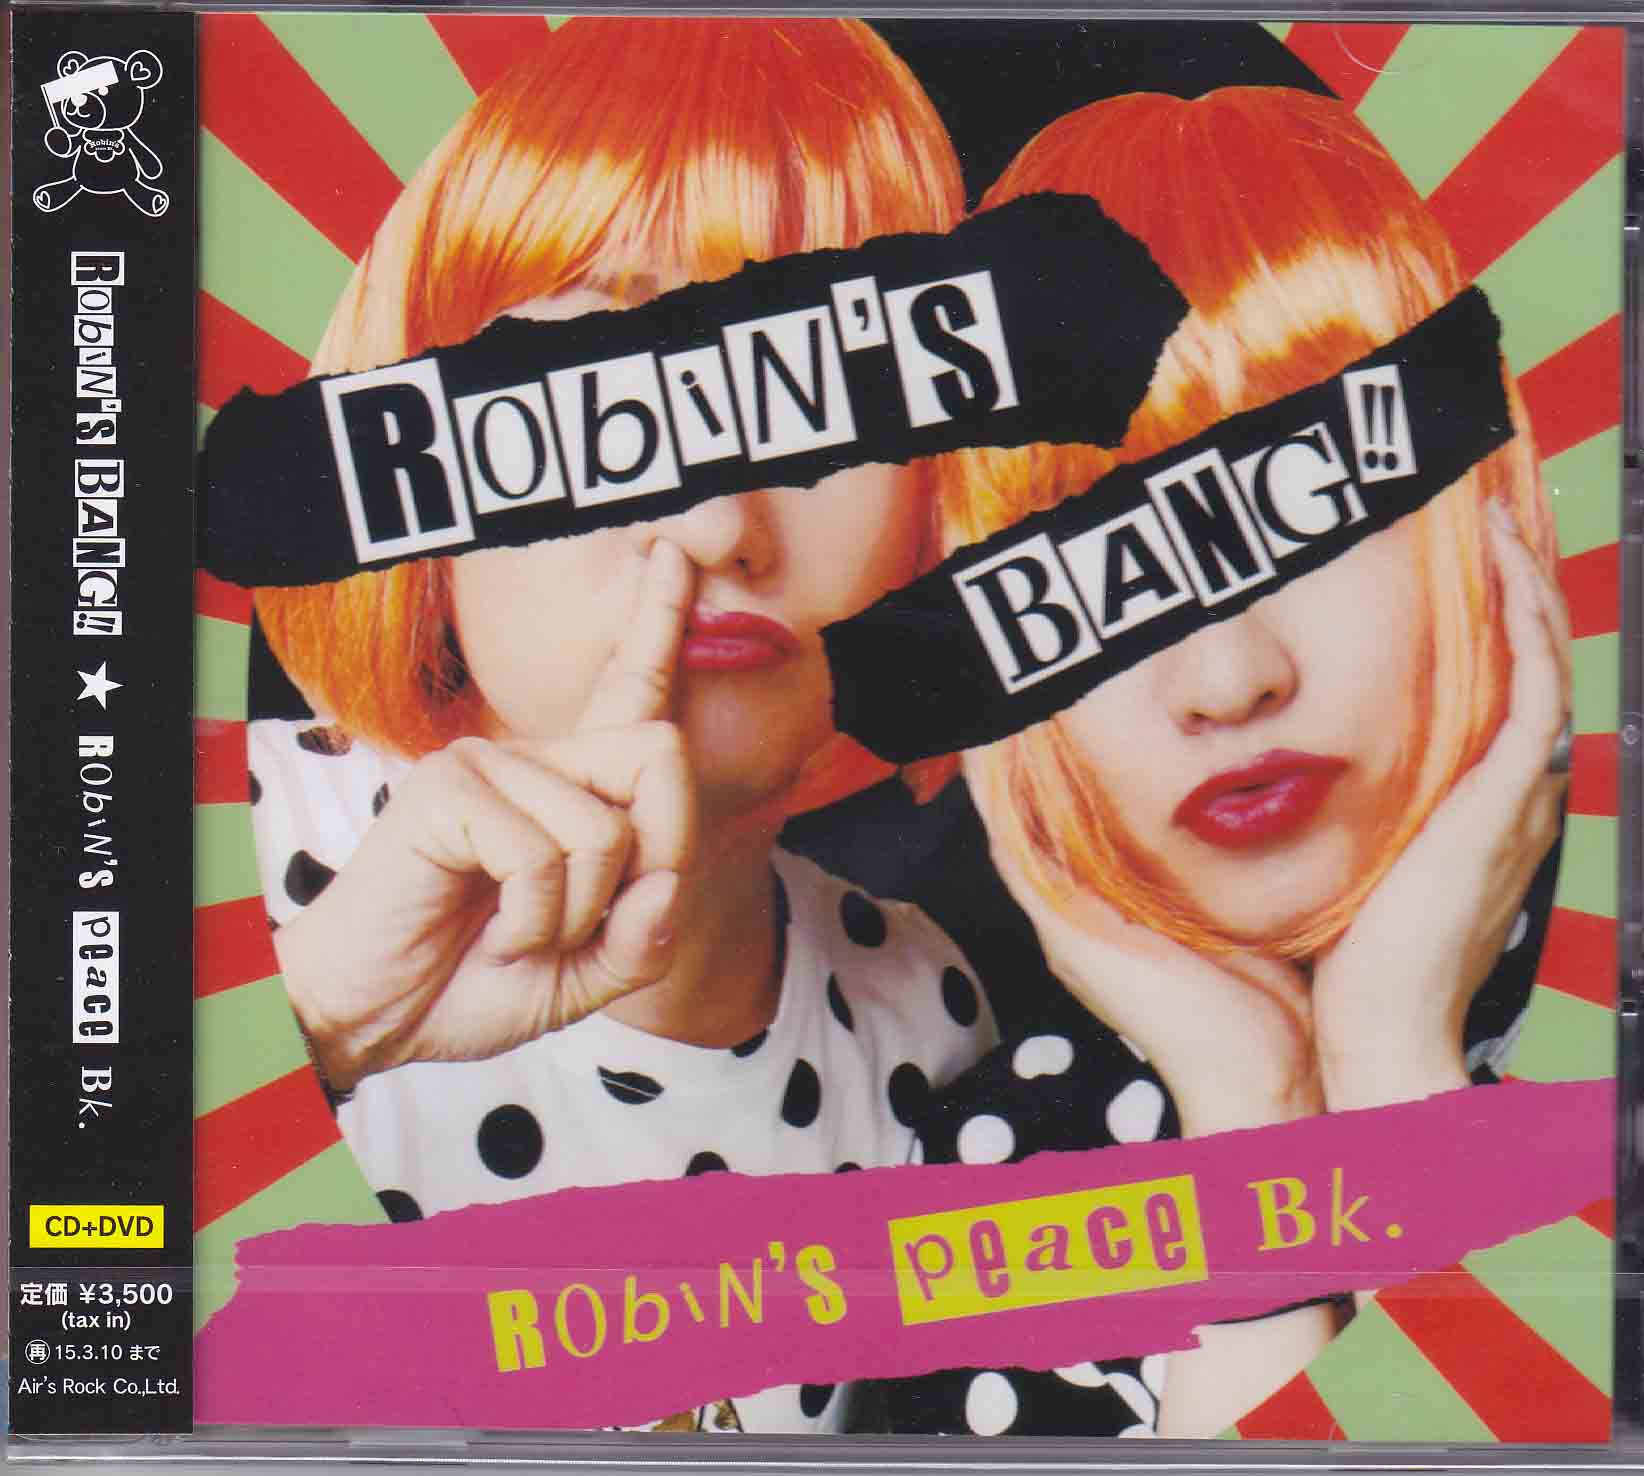 Robin's peace Bk. ( ロビンズピースビーケー )  の CD Robin’s BANG!!【A-type】